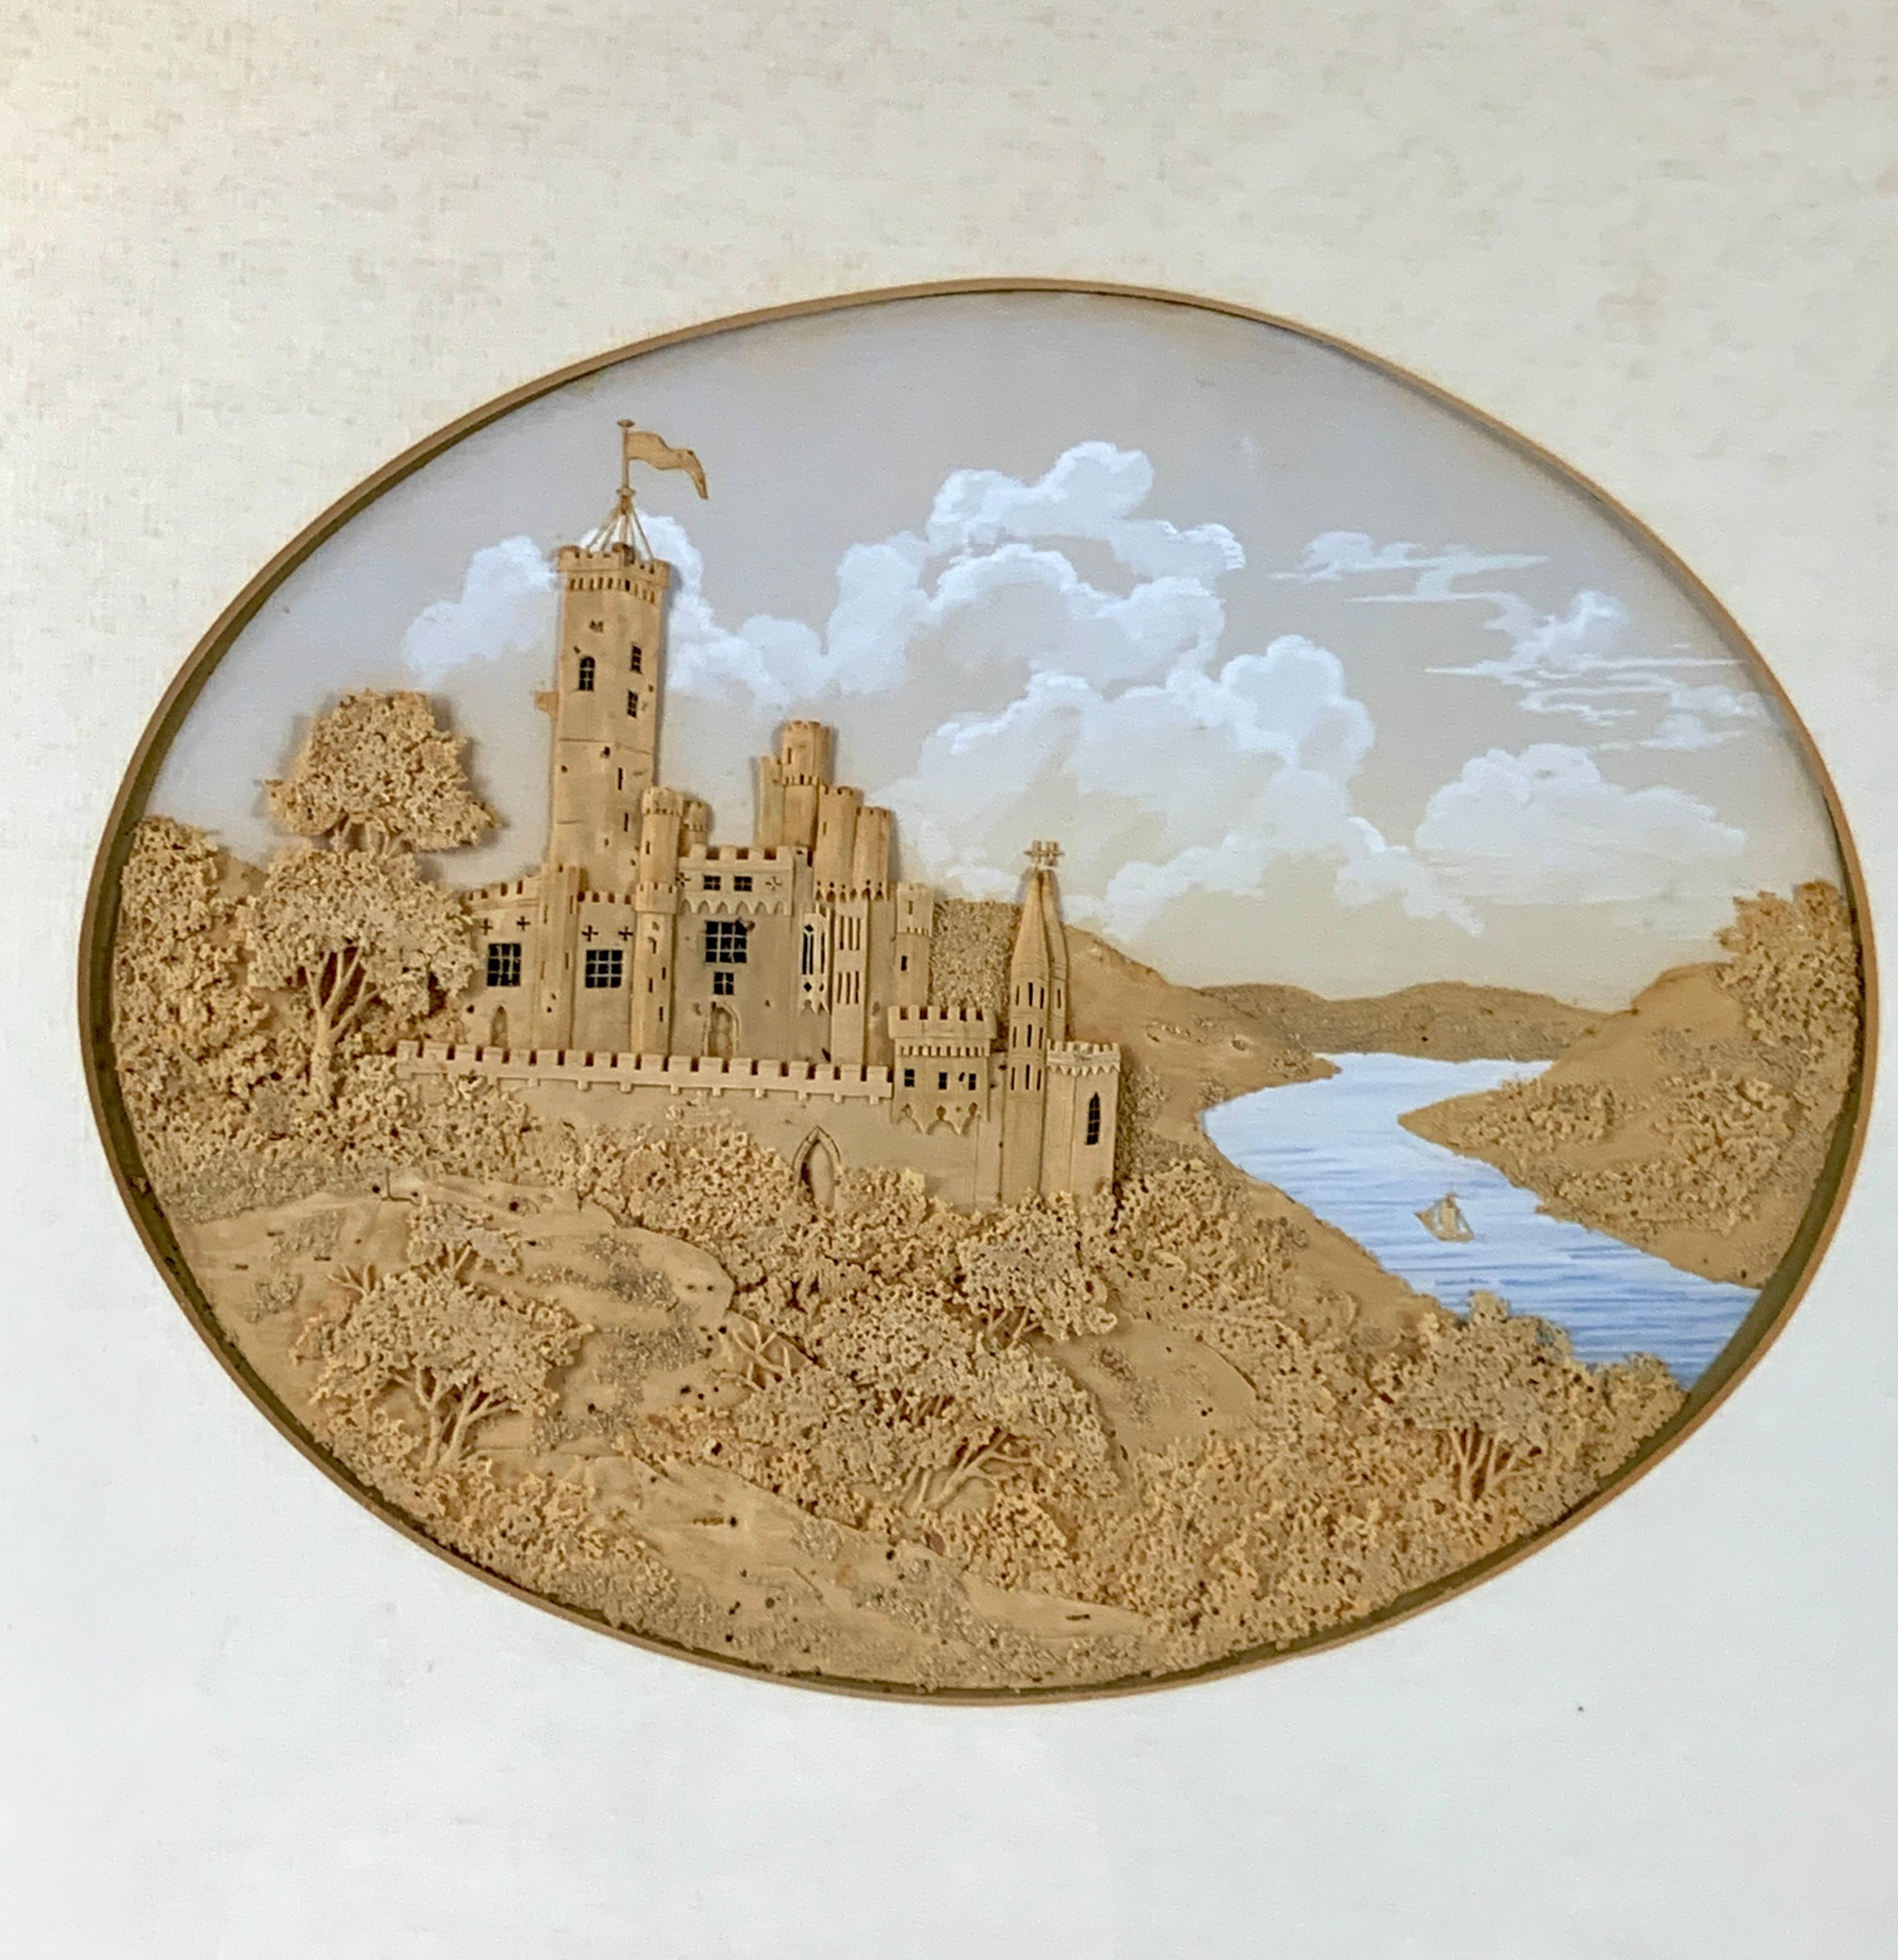  Diese Korkarbeit aus der Mitte des 19. Jahrhunderts zeigt eine romantische Szene einer alten Burg in einem charmanten Diorama. Das Schloss befindet sich auf einer Landzunge mit Blick auf einen Fluss, mit bewaldetem Terrain und einem kleinen